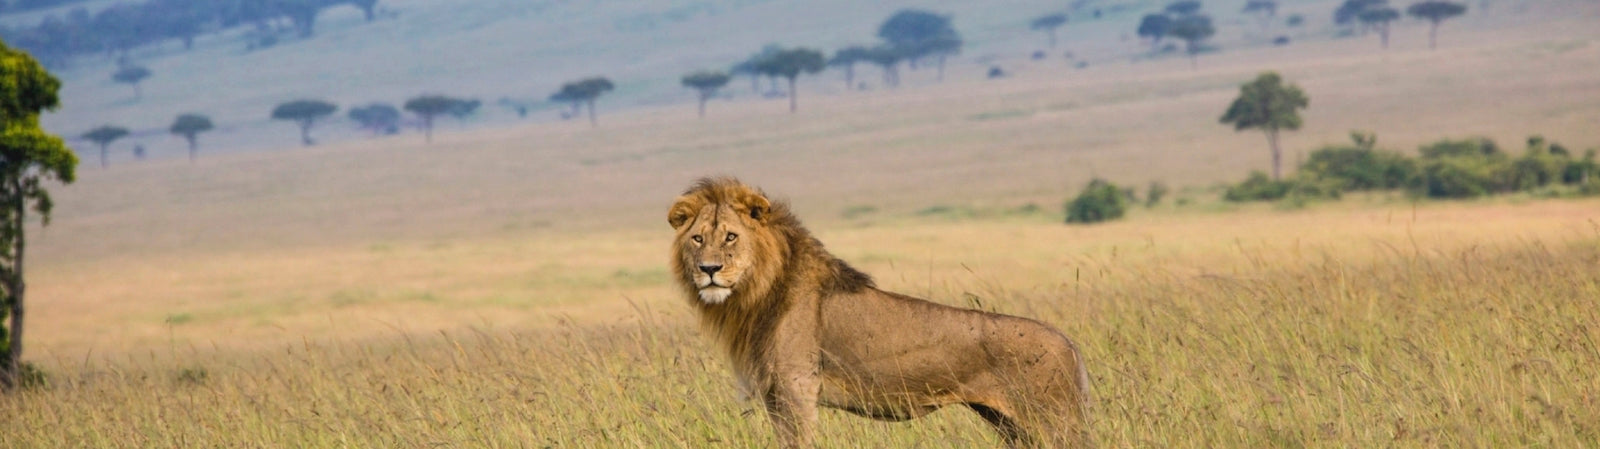 Lion Male Solitaire dans la savane africaine